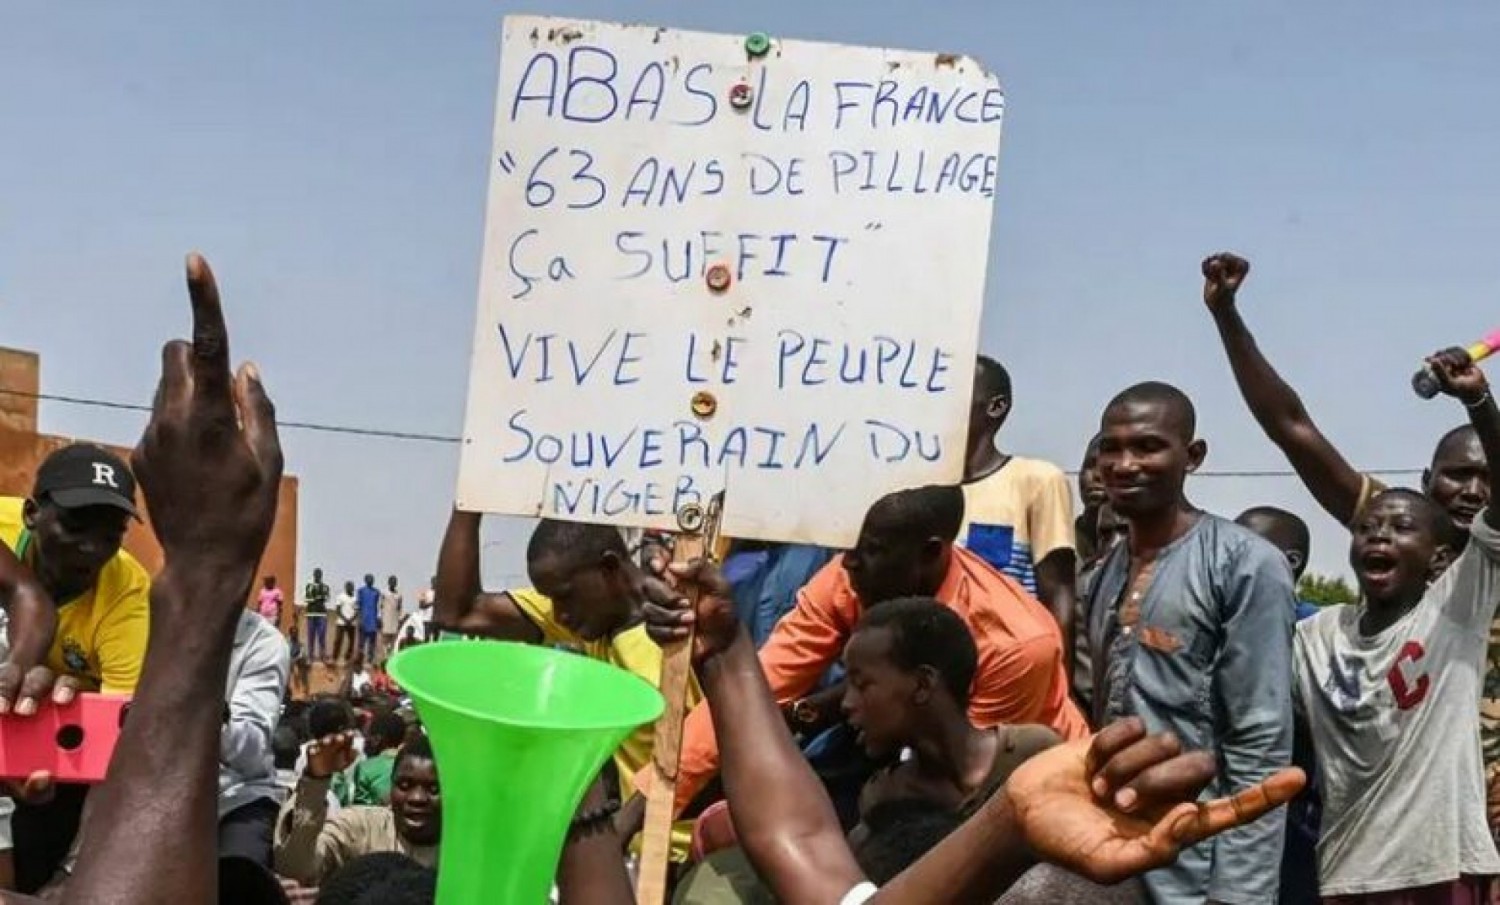 Niger : « A bas la France, 63 ans de pillage ça suffit », la rue à nouveau mobilisée pour réclamer le départ des forces françaises